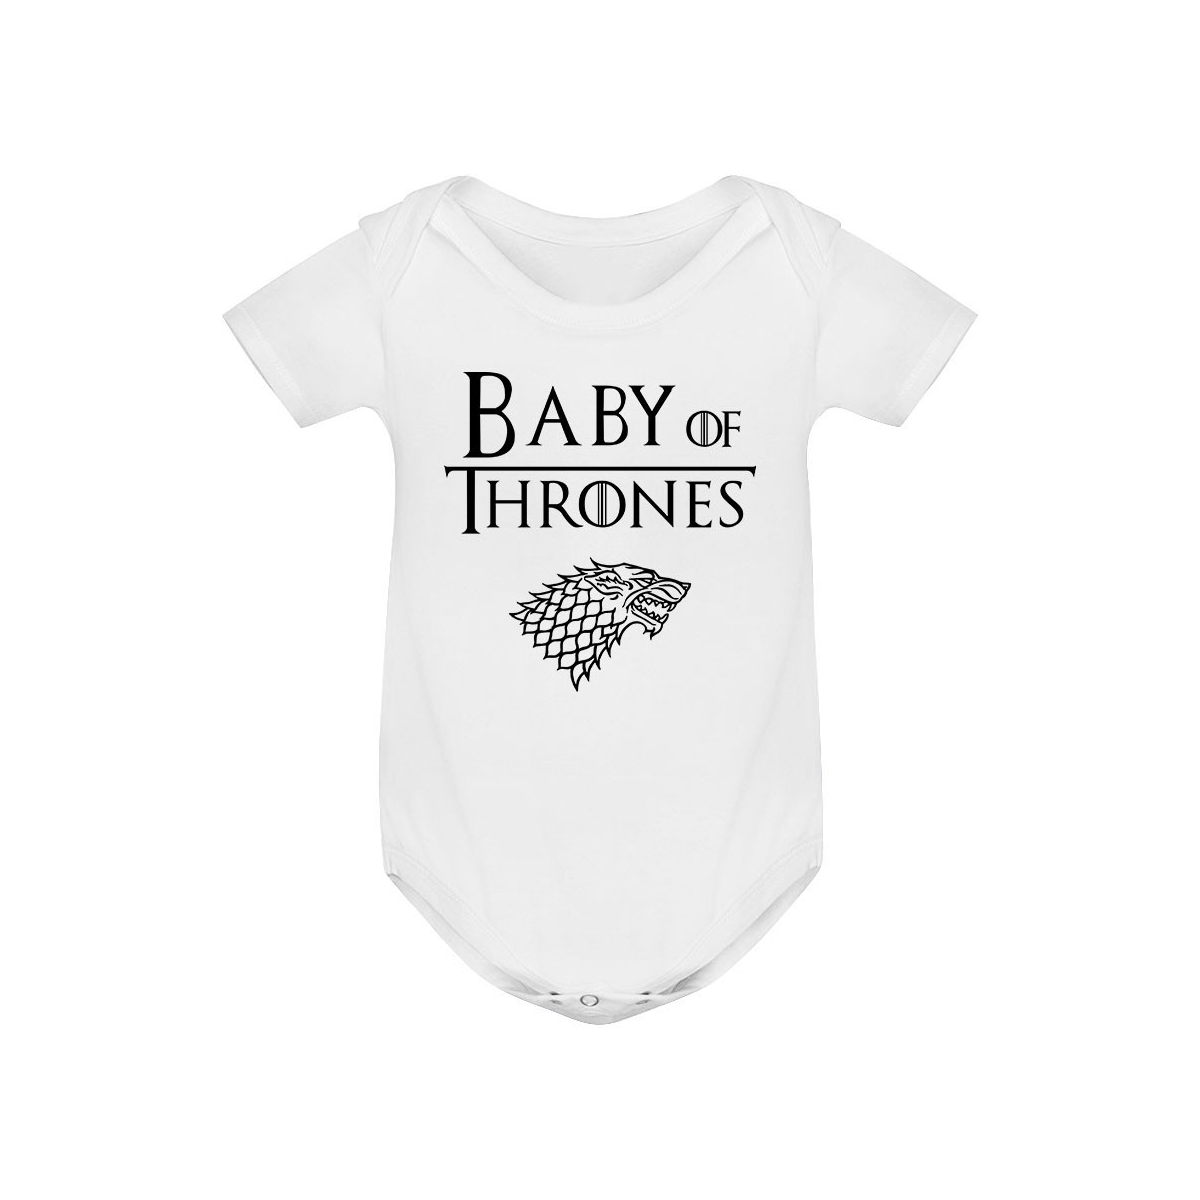 Body bébé Baby of thrones